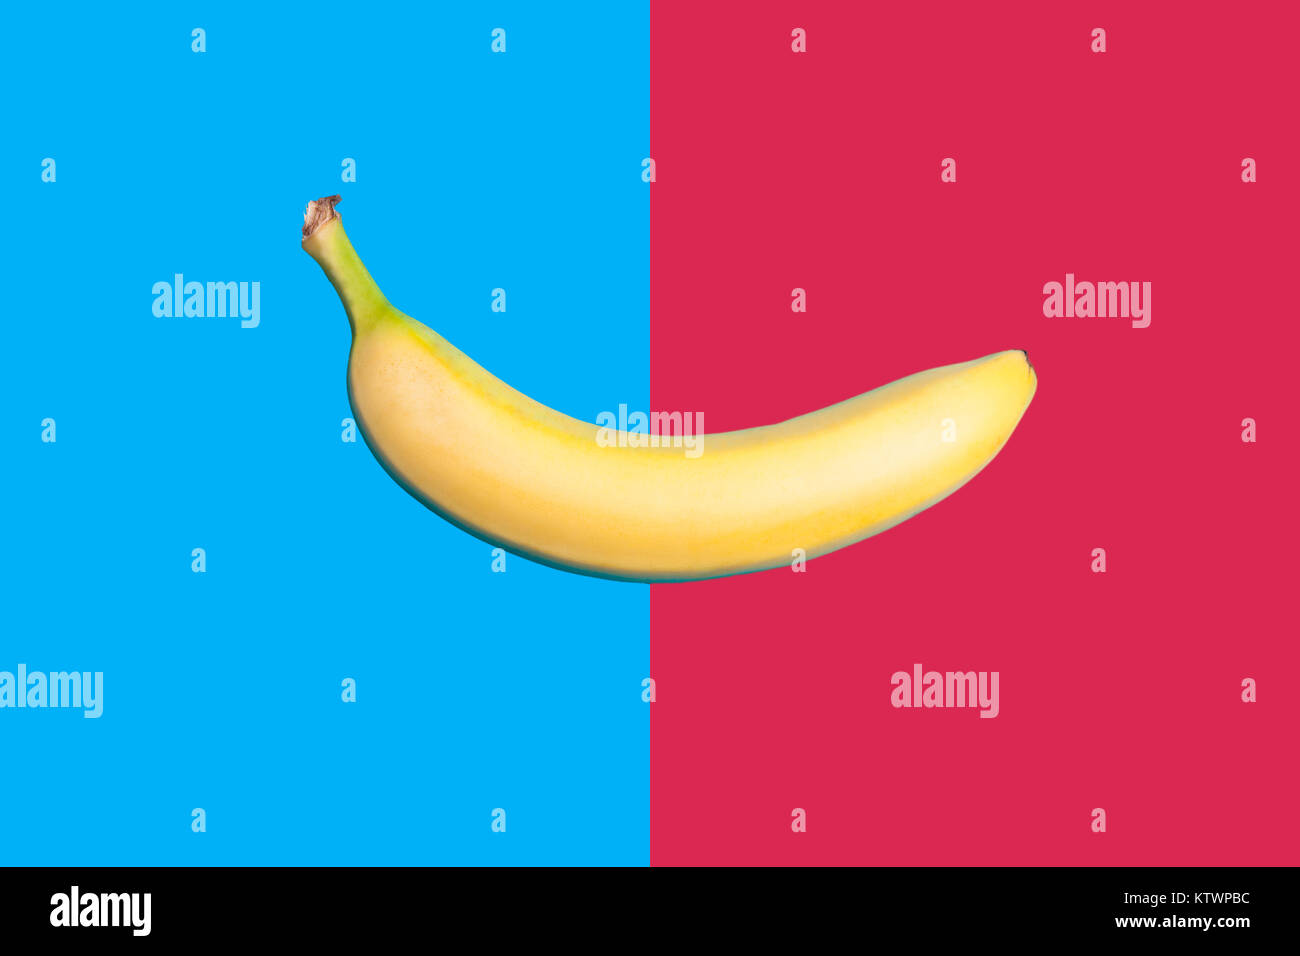 Banane auf zwei farbigen bacground in der Mitte geteilt Stockfoto